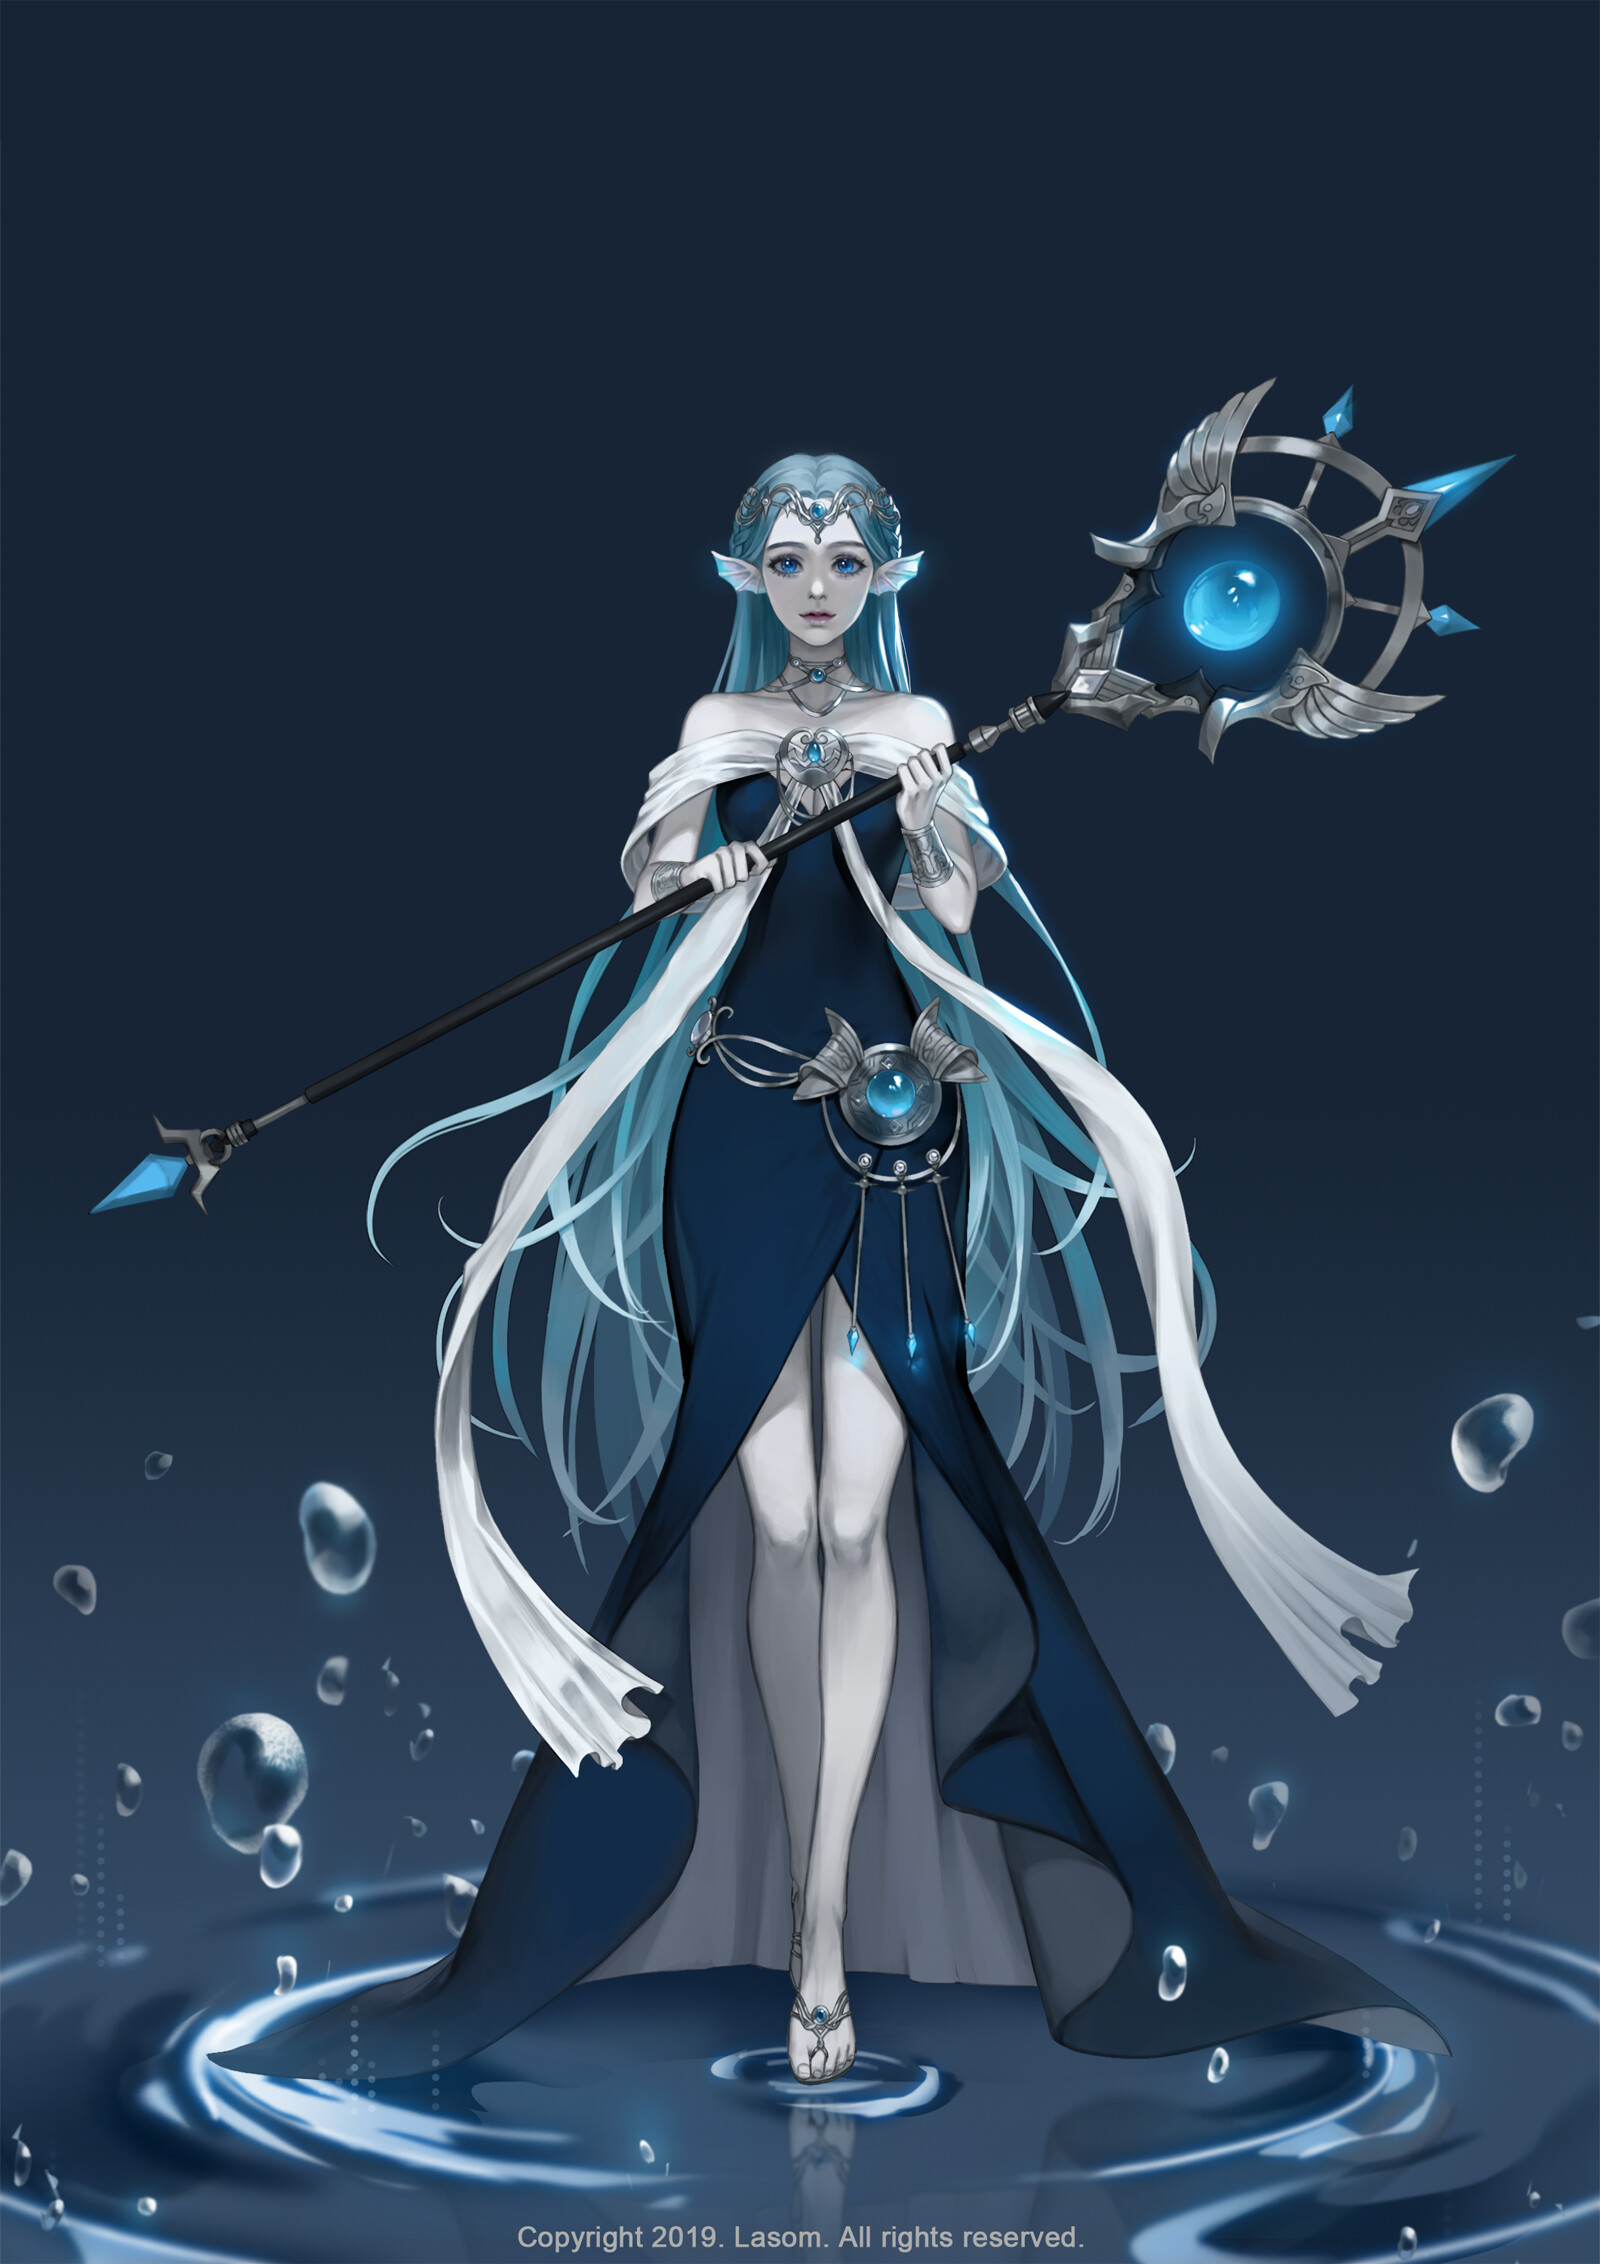 ArtStation - Water fairy